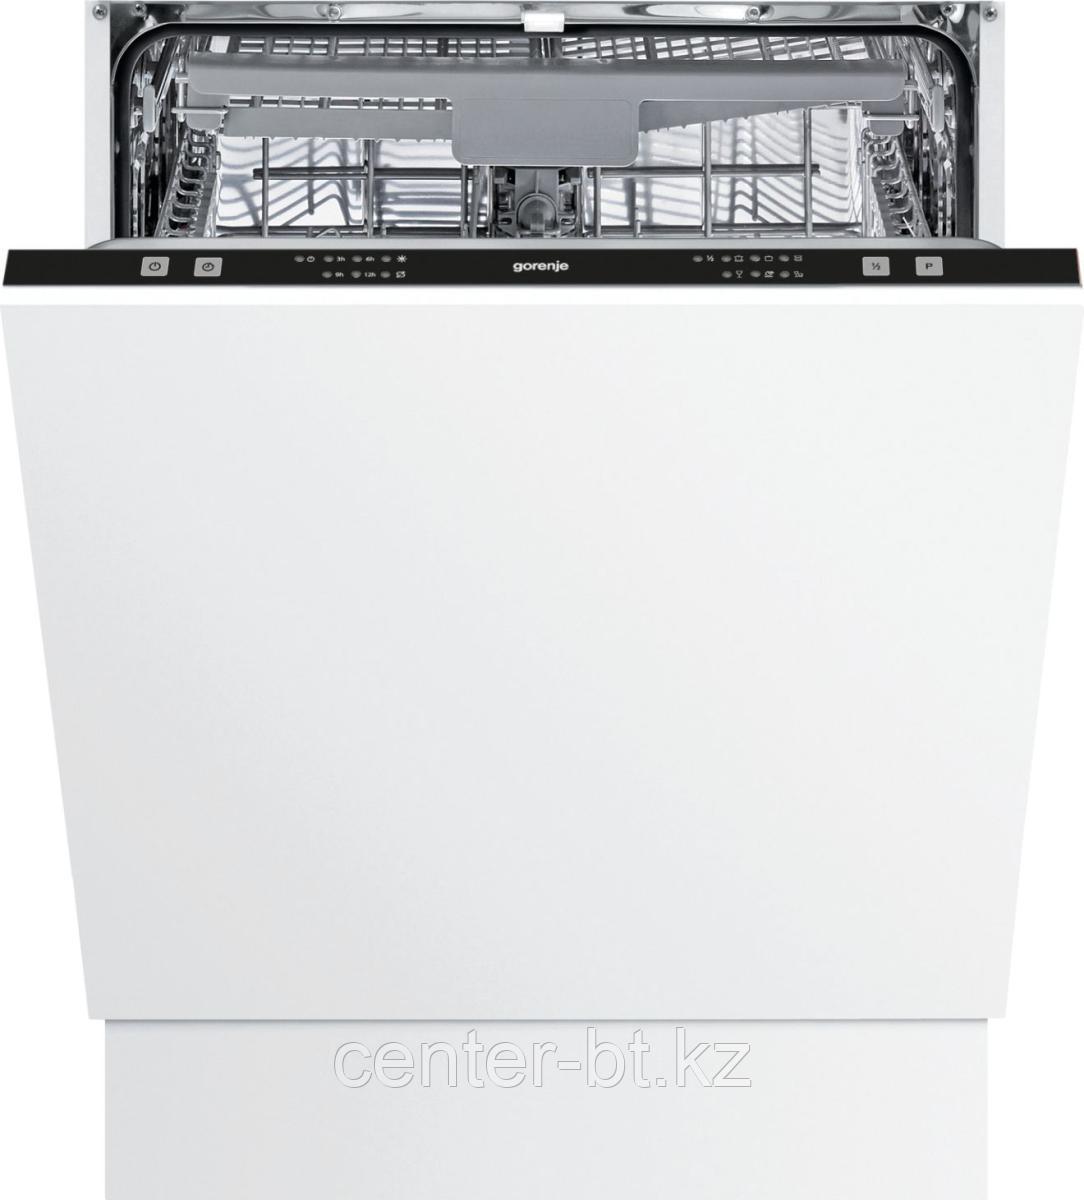 Полностью встраиваемая посудомоечная машина Gorenje GV62212